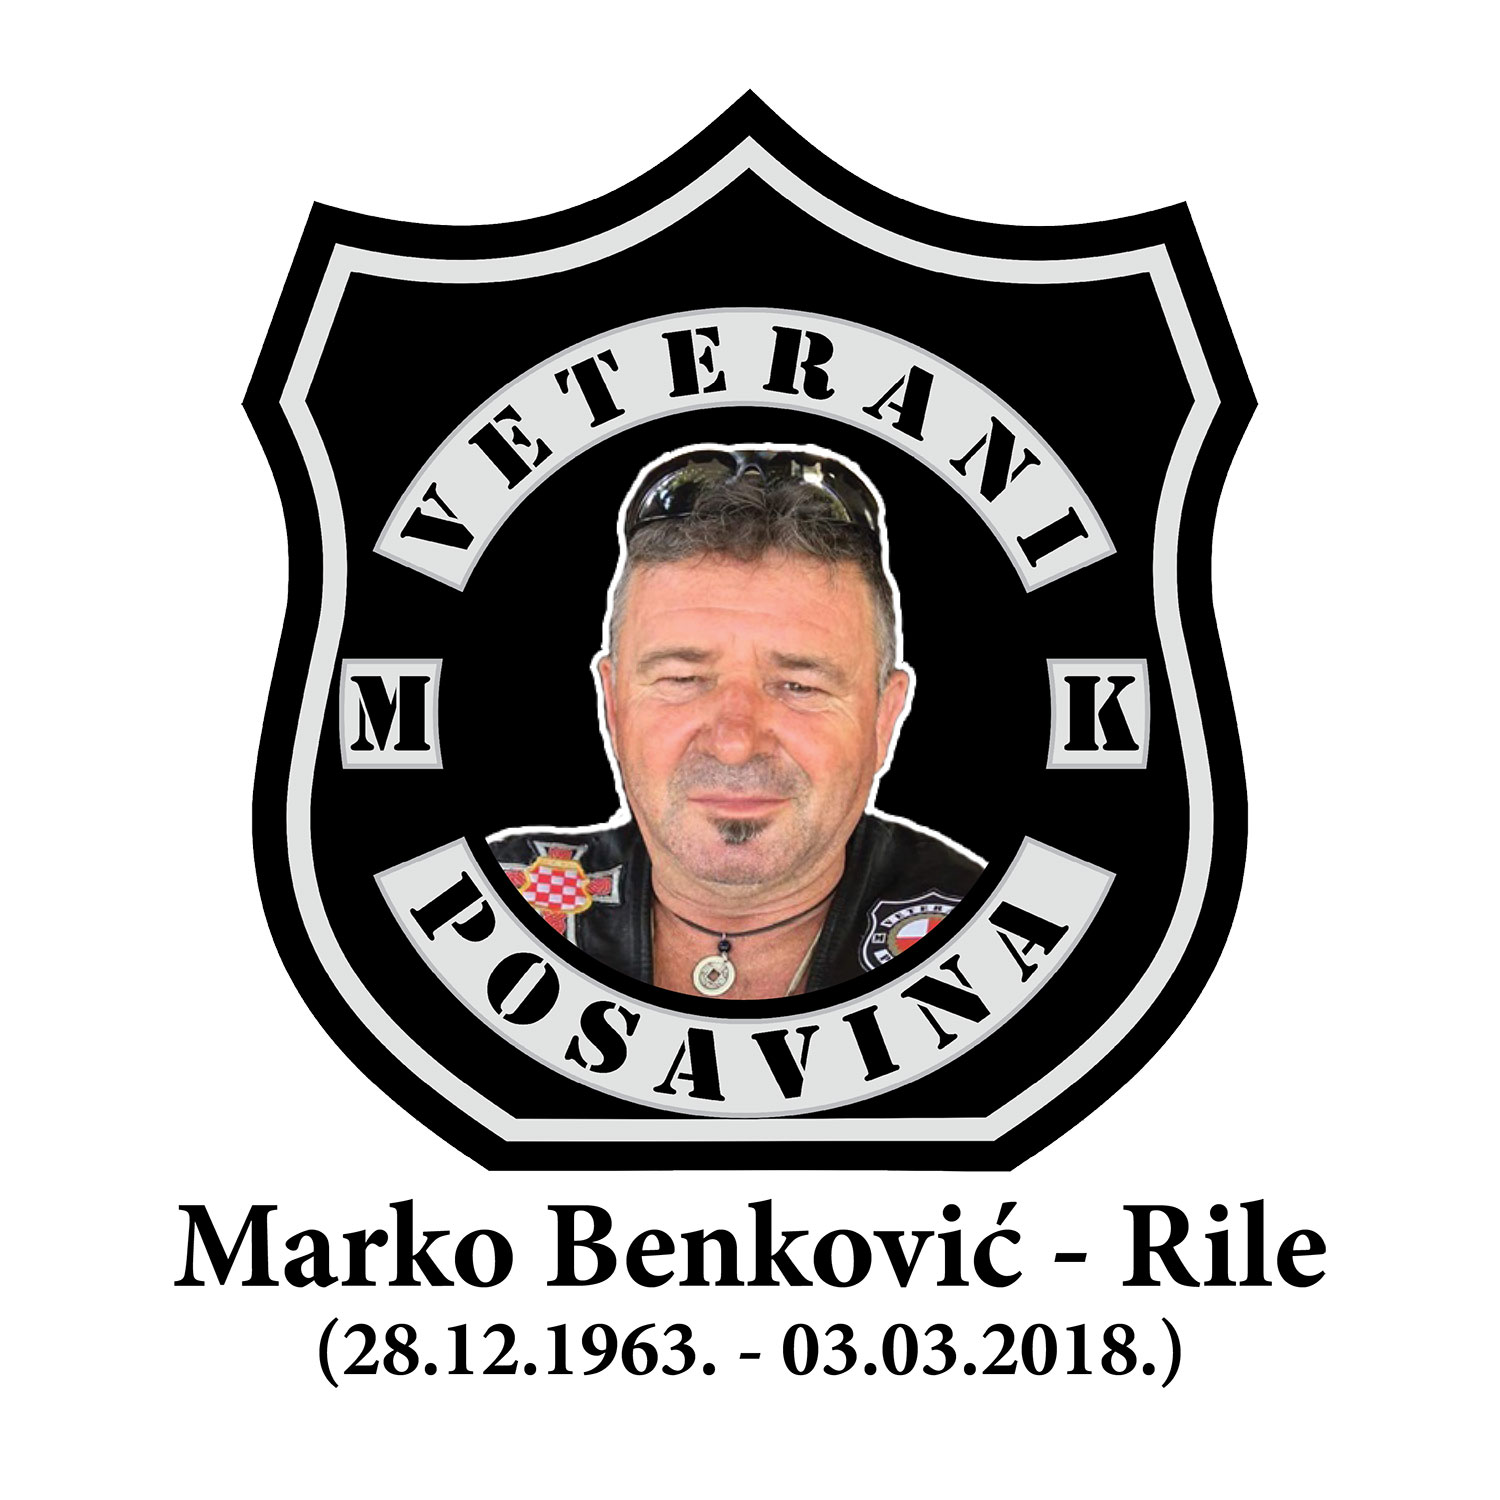 2018 03 03 benkovic marko rile 28121963 03032018